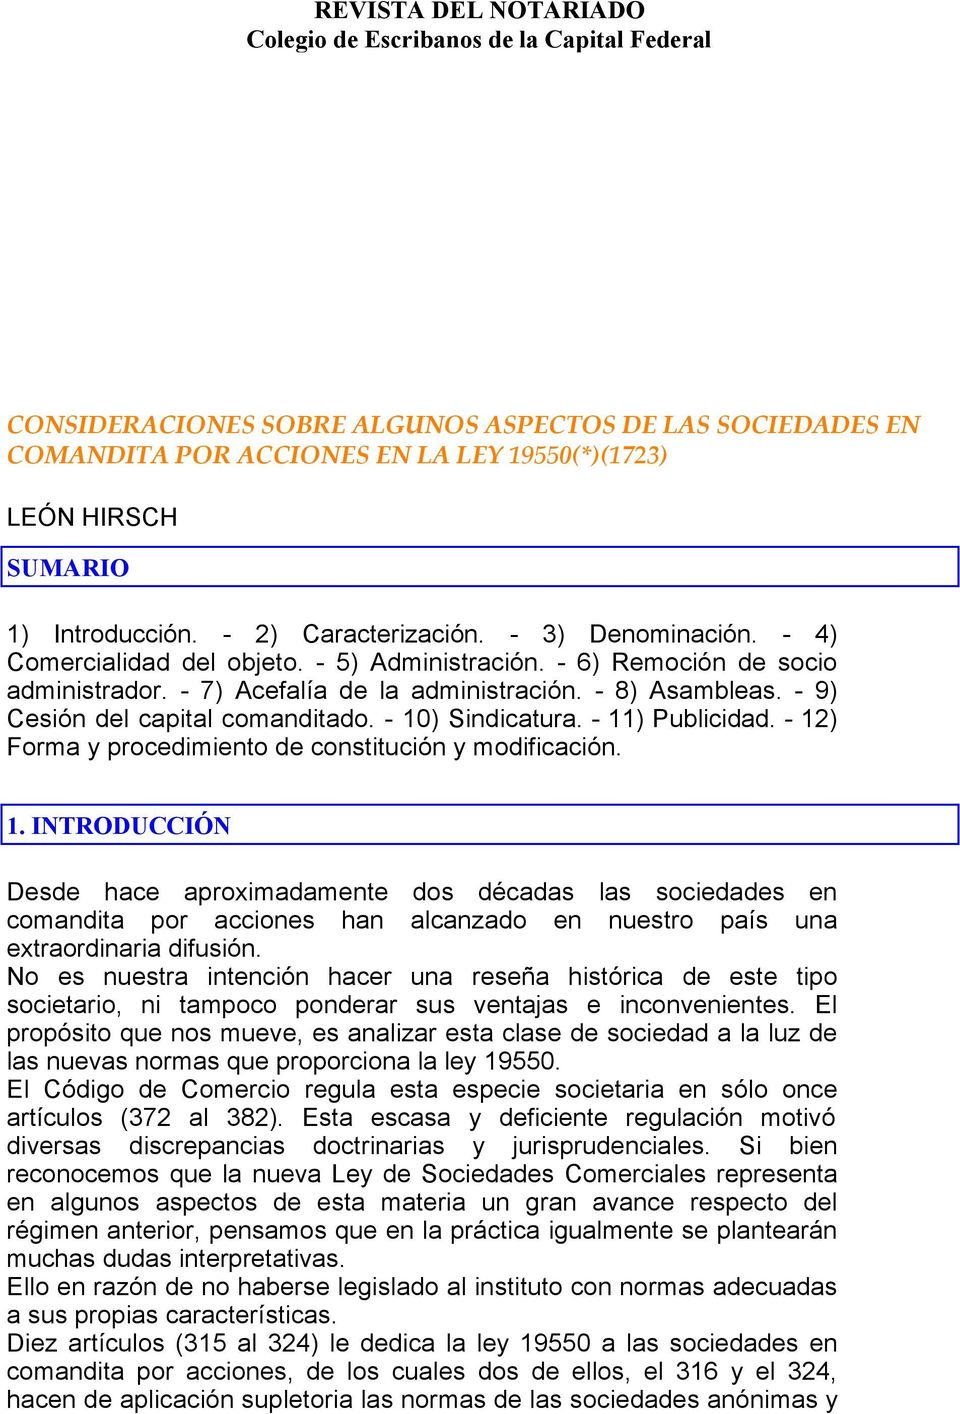 LEY DE SOCIEDADES COMERCIALES CONSIDERACIONES SOBRE ALGUNOS ASPECTOS DE LAS SOCIEDADES EN COMANDITA POR ACCIONES EN LA LEY 19550(*)(1723) LEÓN HIRSCH SUMARIO 1) Introducción. - 2) Caracterización.